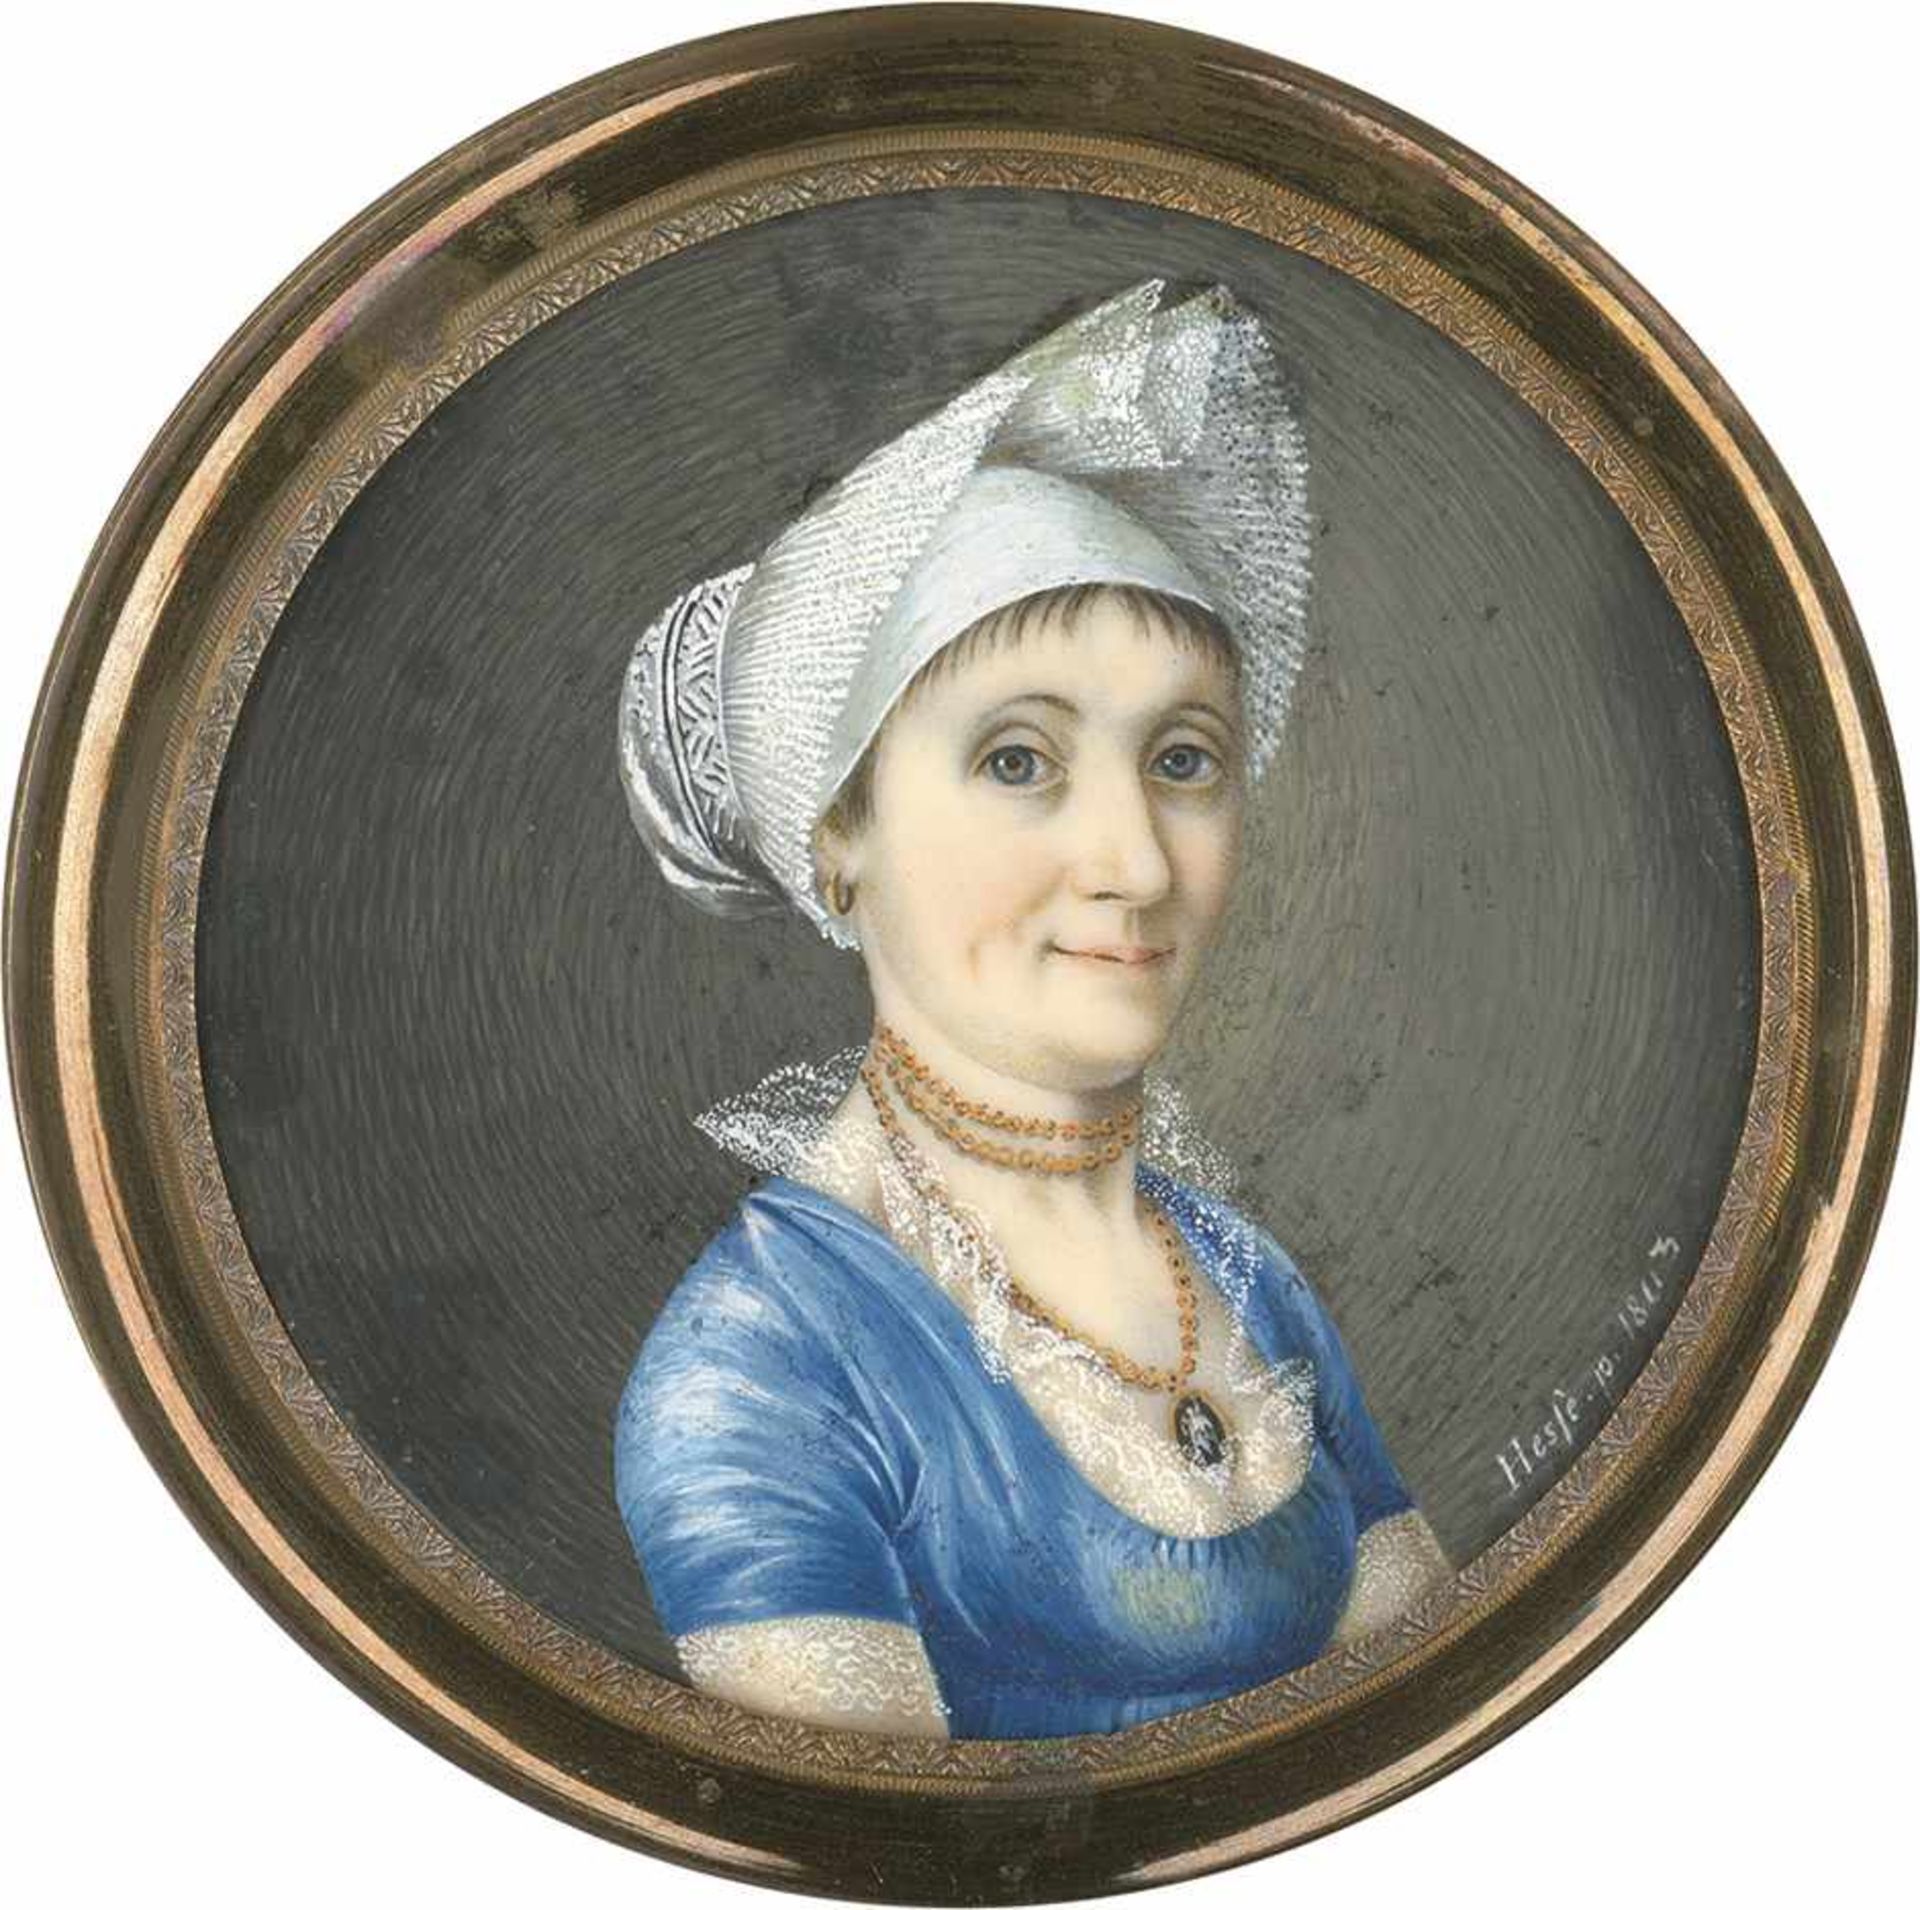 Hesse, Daniel: Bildnis einer jungen Frau mit weißer Haube, in blauem Kleid, plus PlaketteBildnis